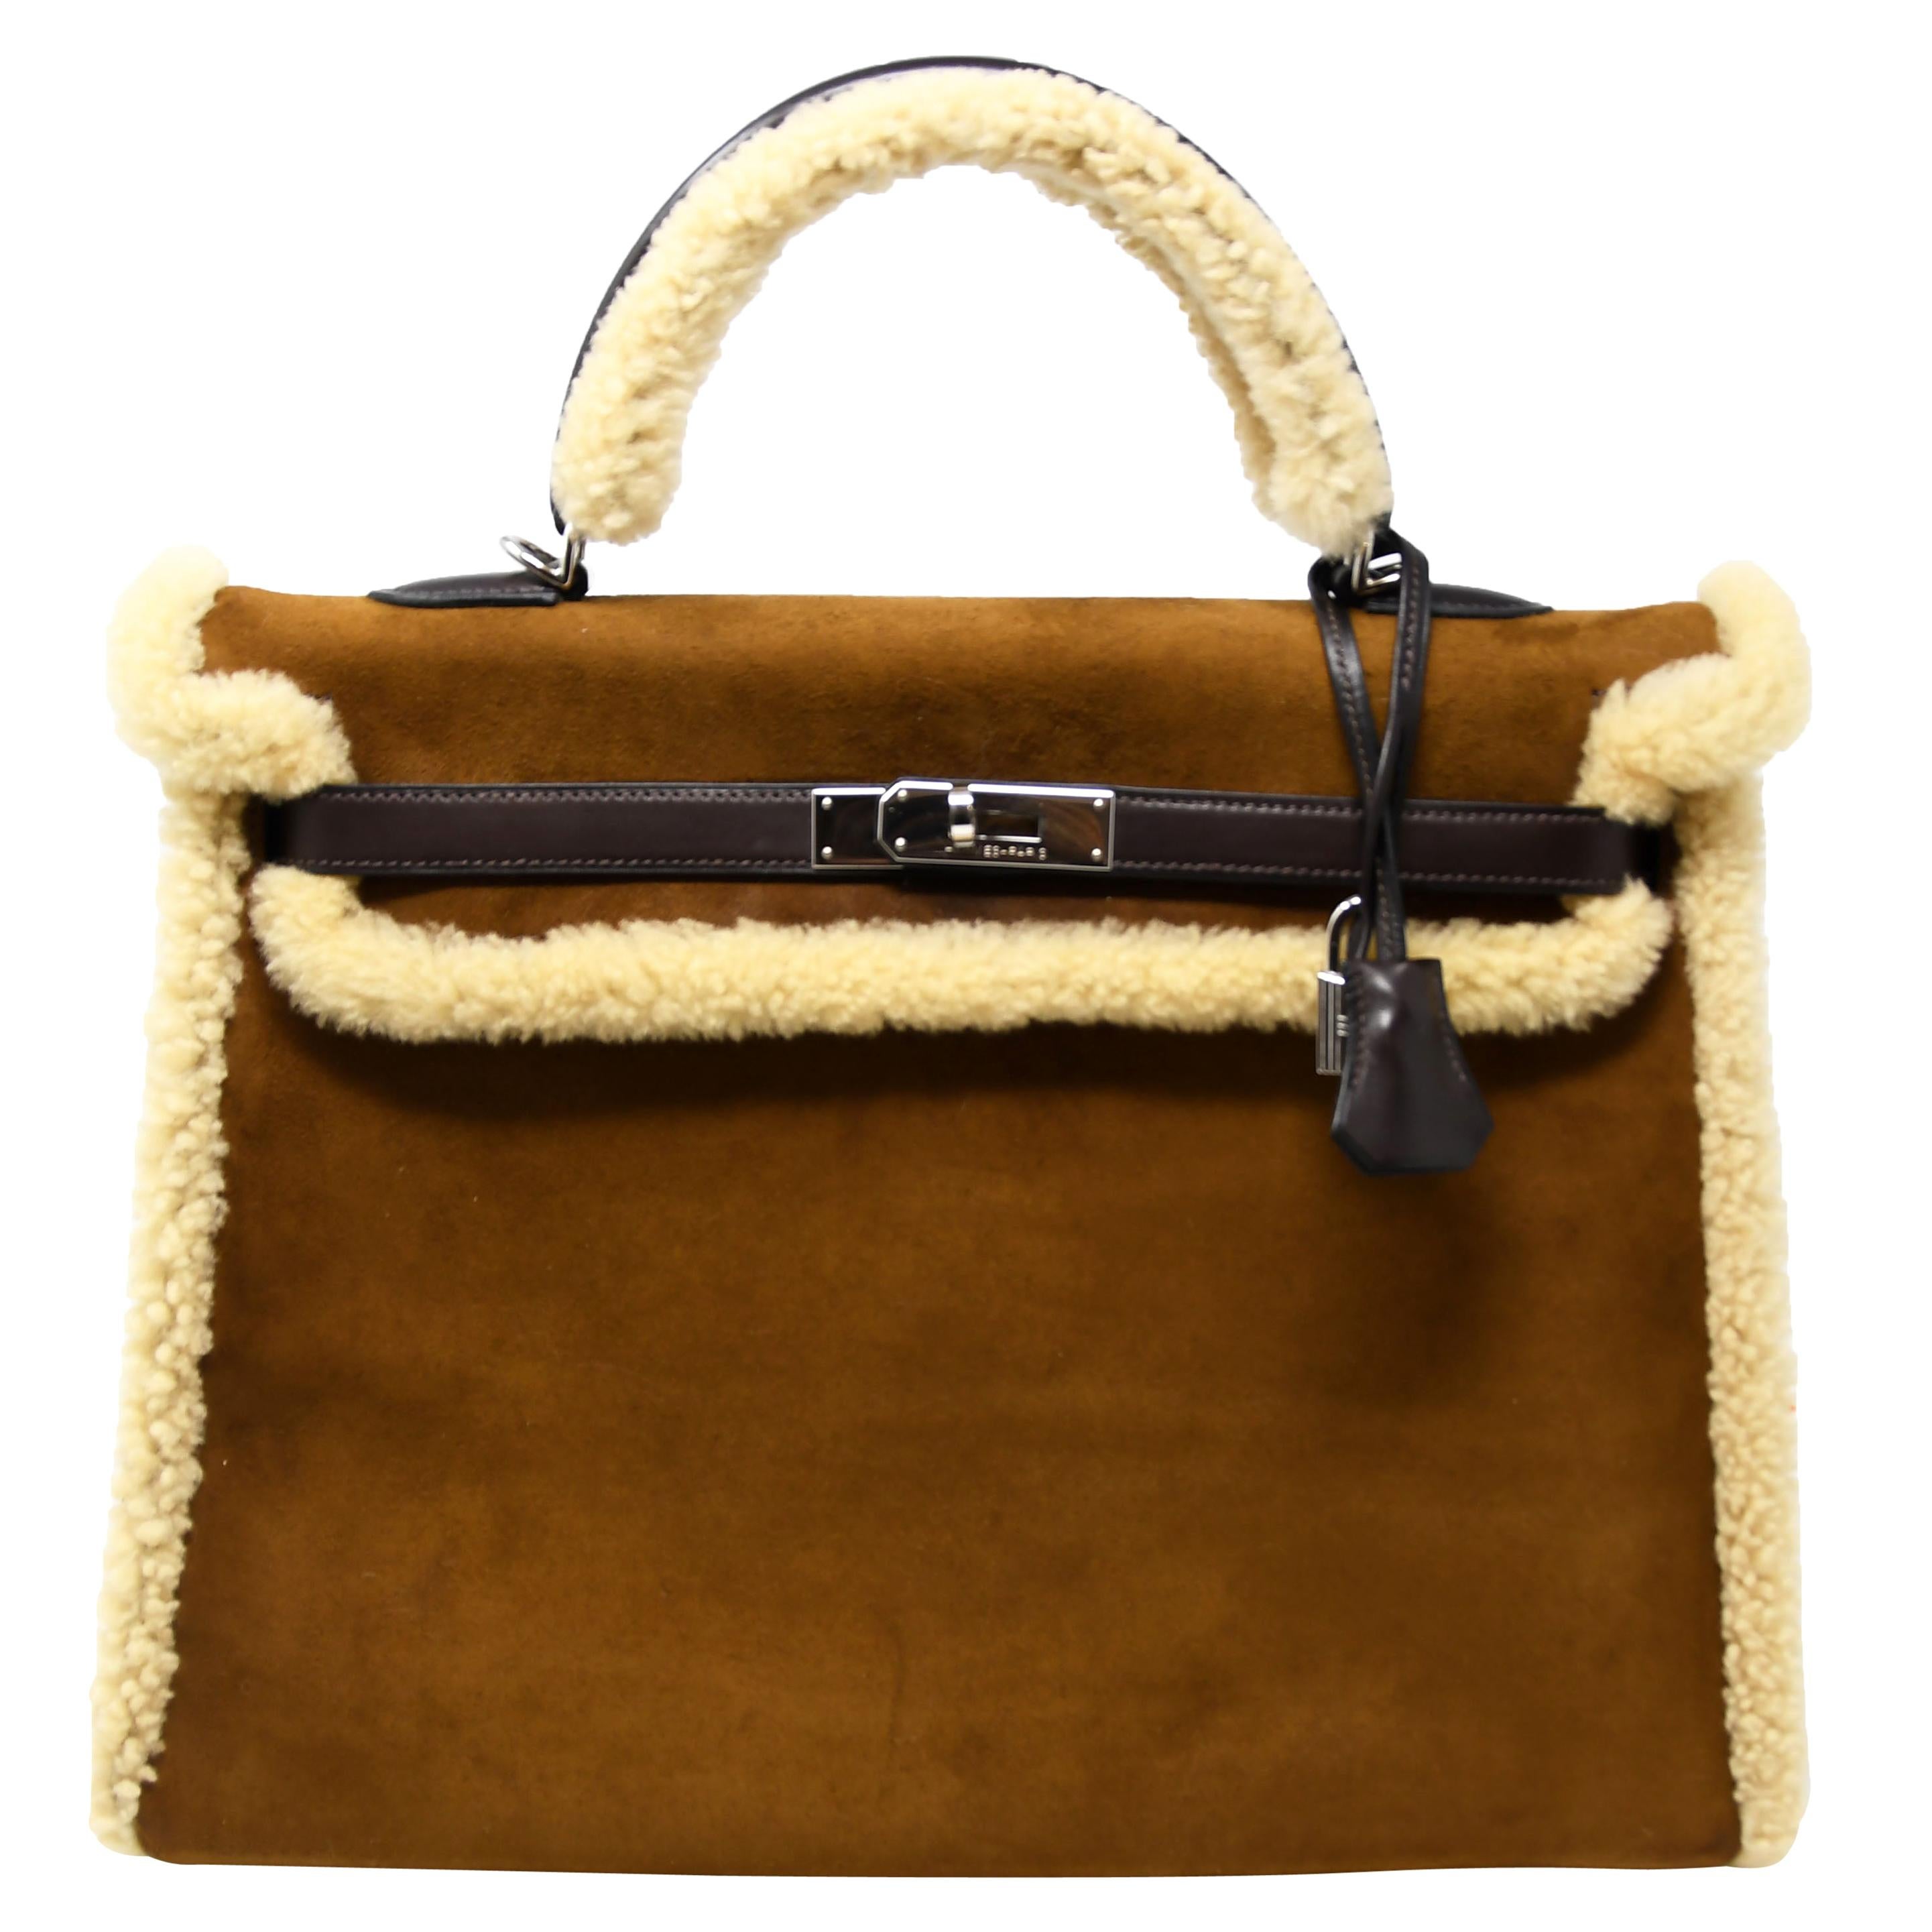 Chinoiserie Chic: The Original Birkin Bag